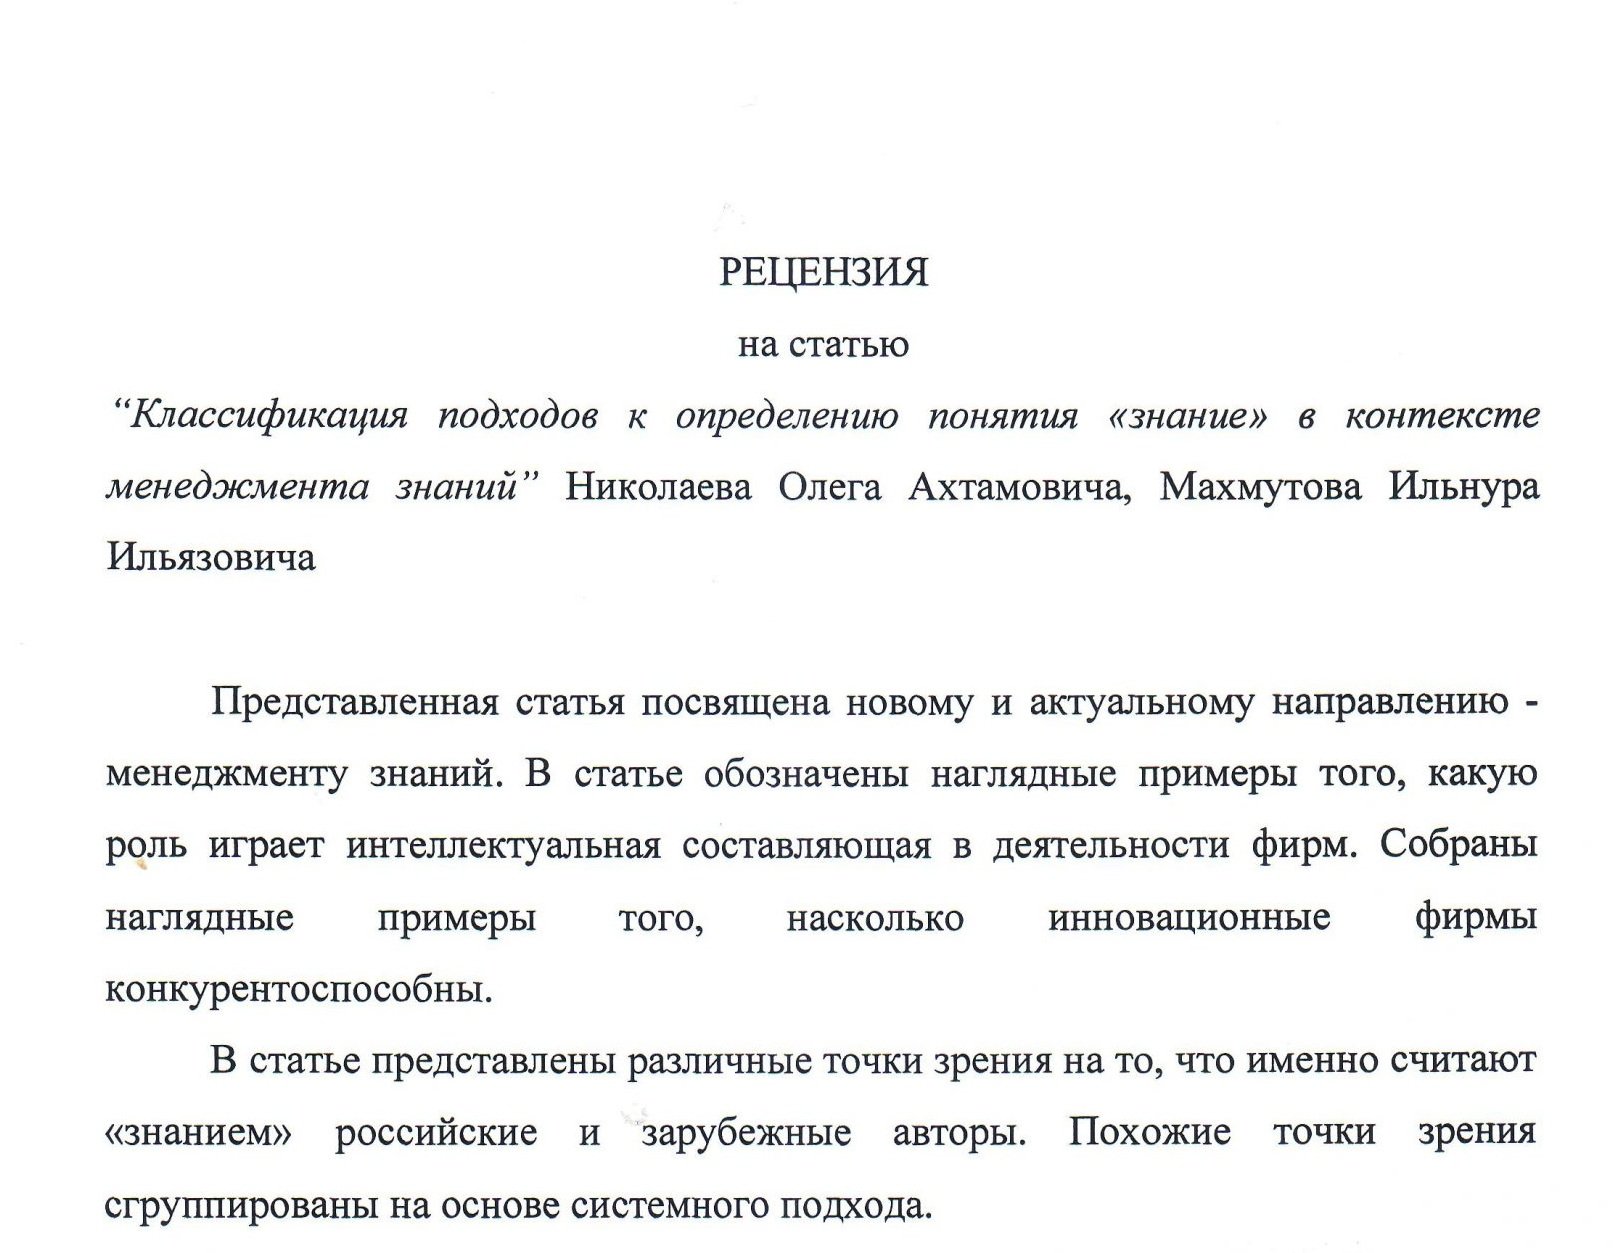 Рецензия на статью: пример - dissertator.ru